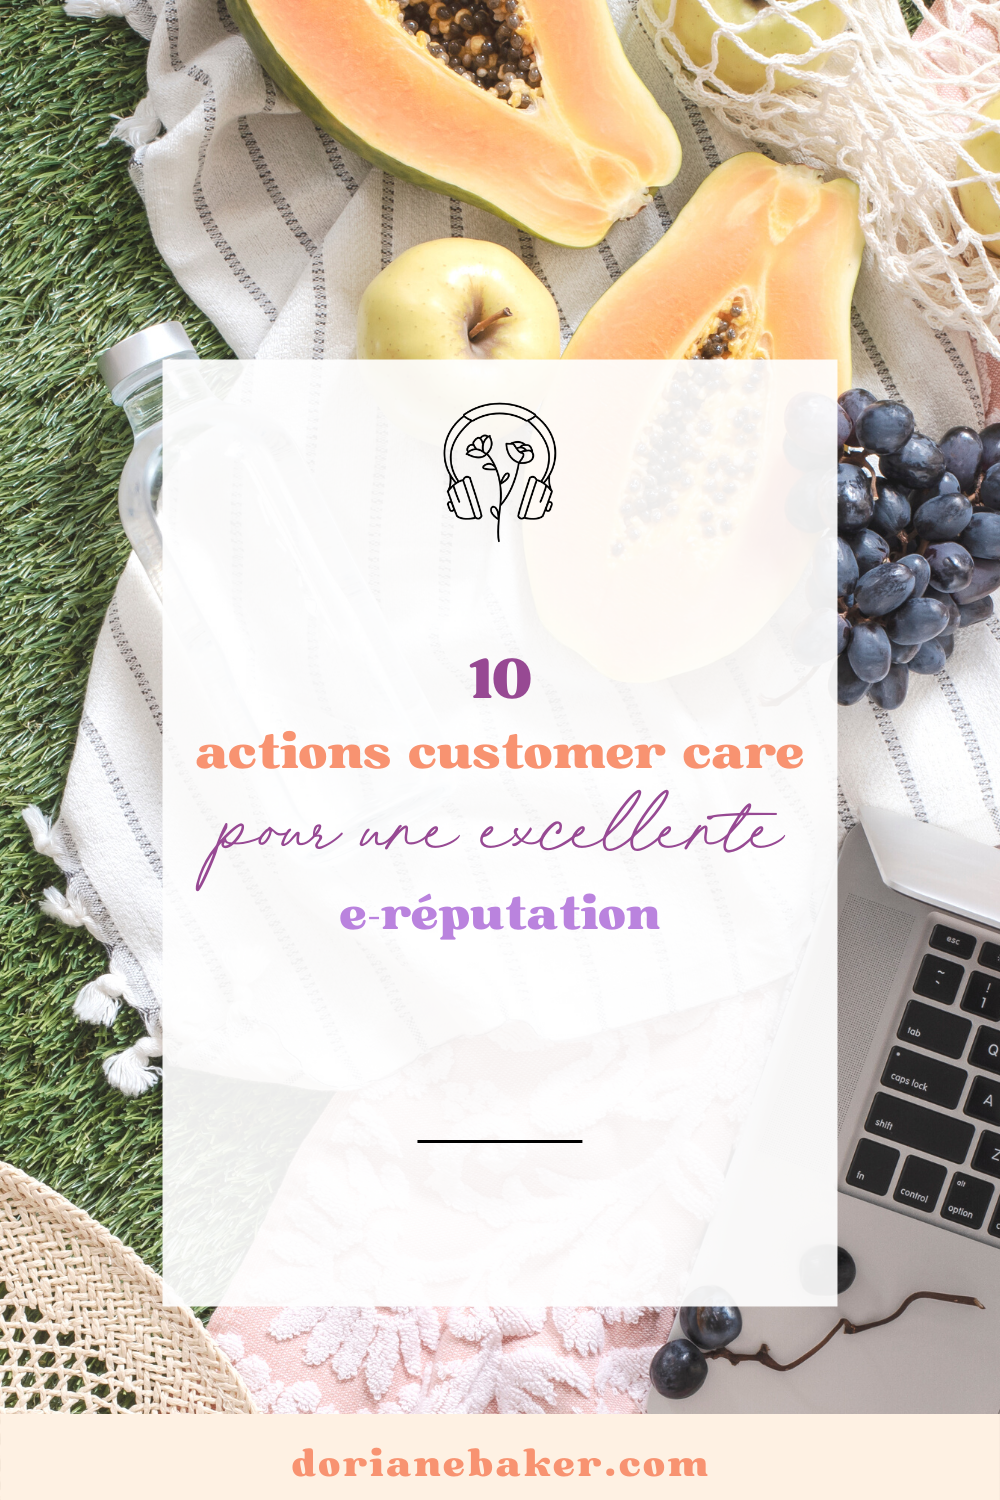 10 actions customer care pour avoir une bonne e-réputation